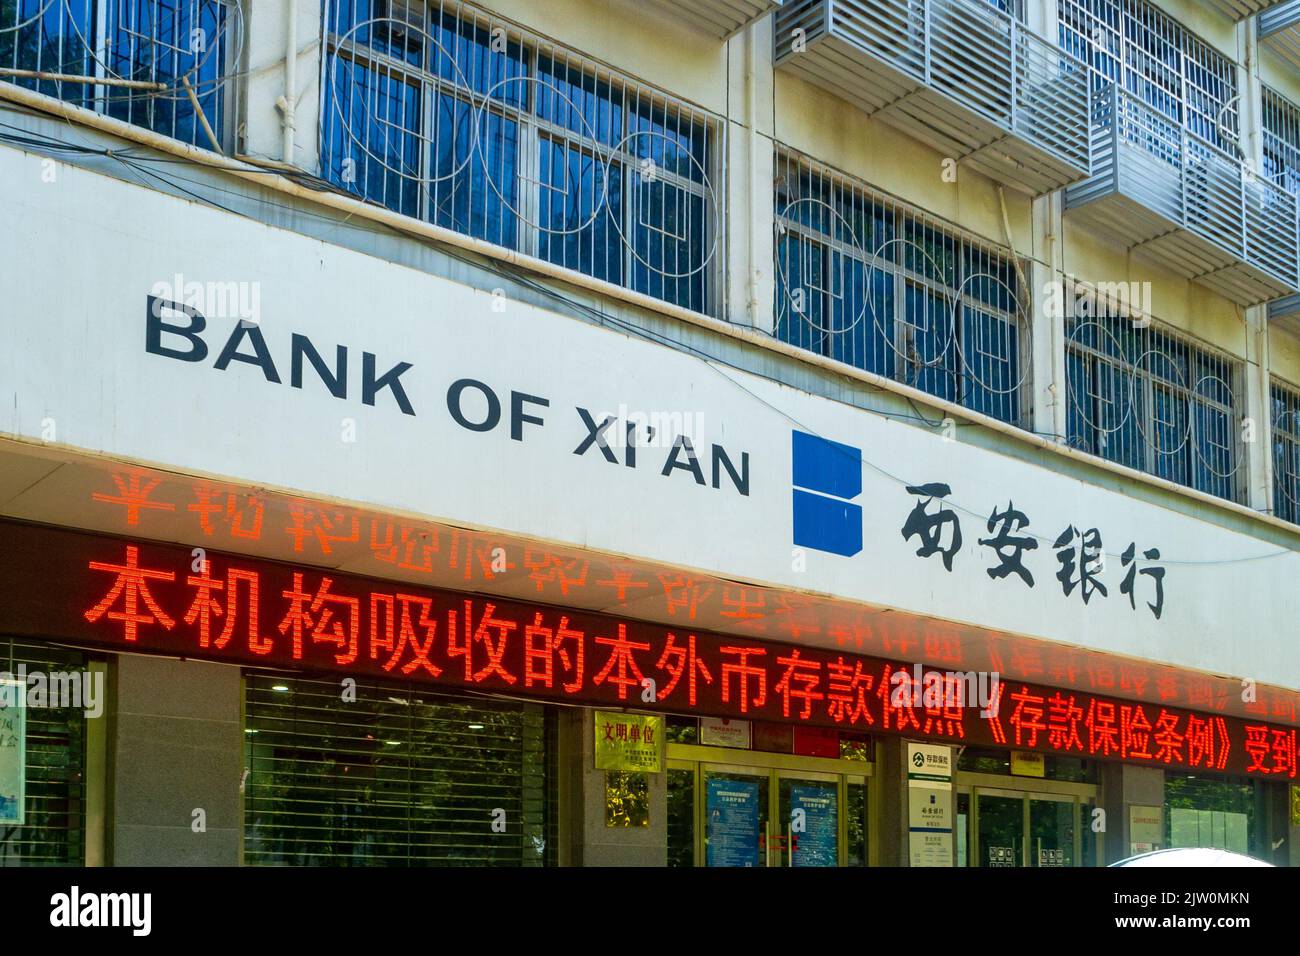 Bank of Xi'an Schild in einem Gebäudeeingang. Seitenansicht des Logos des Finanzinstituts. Stockfoto